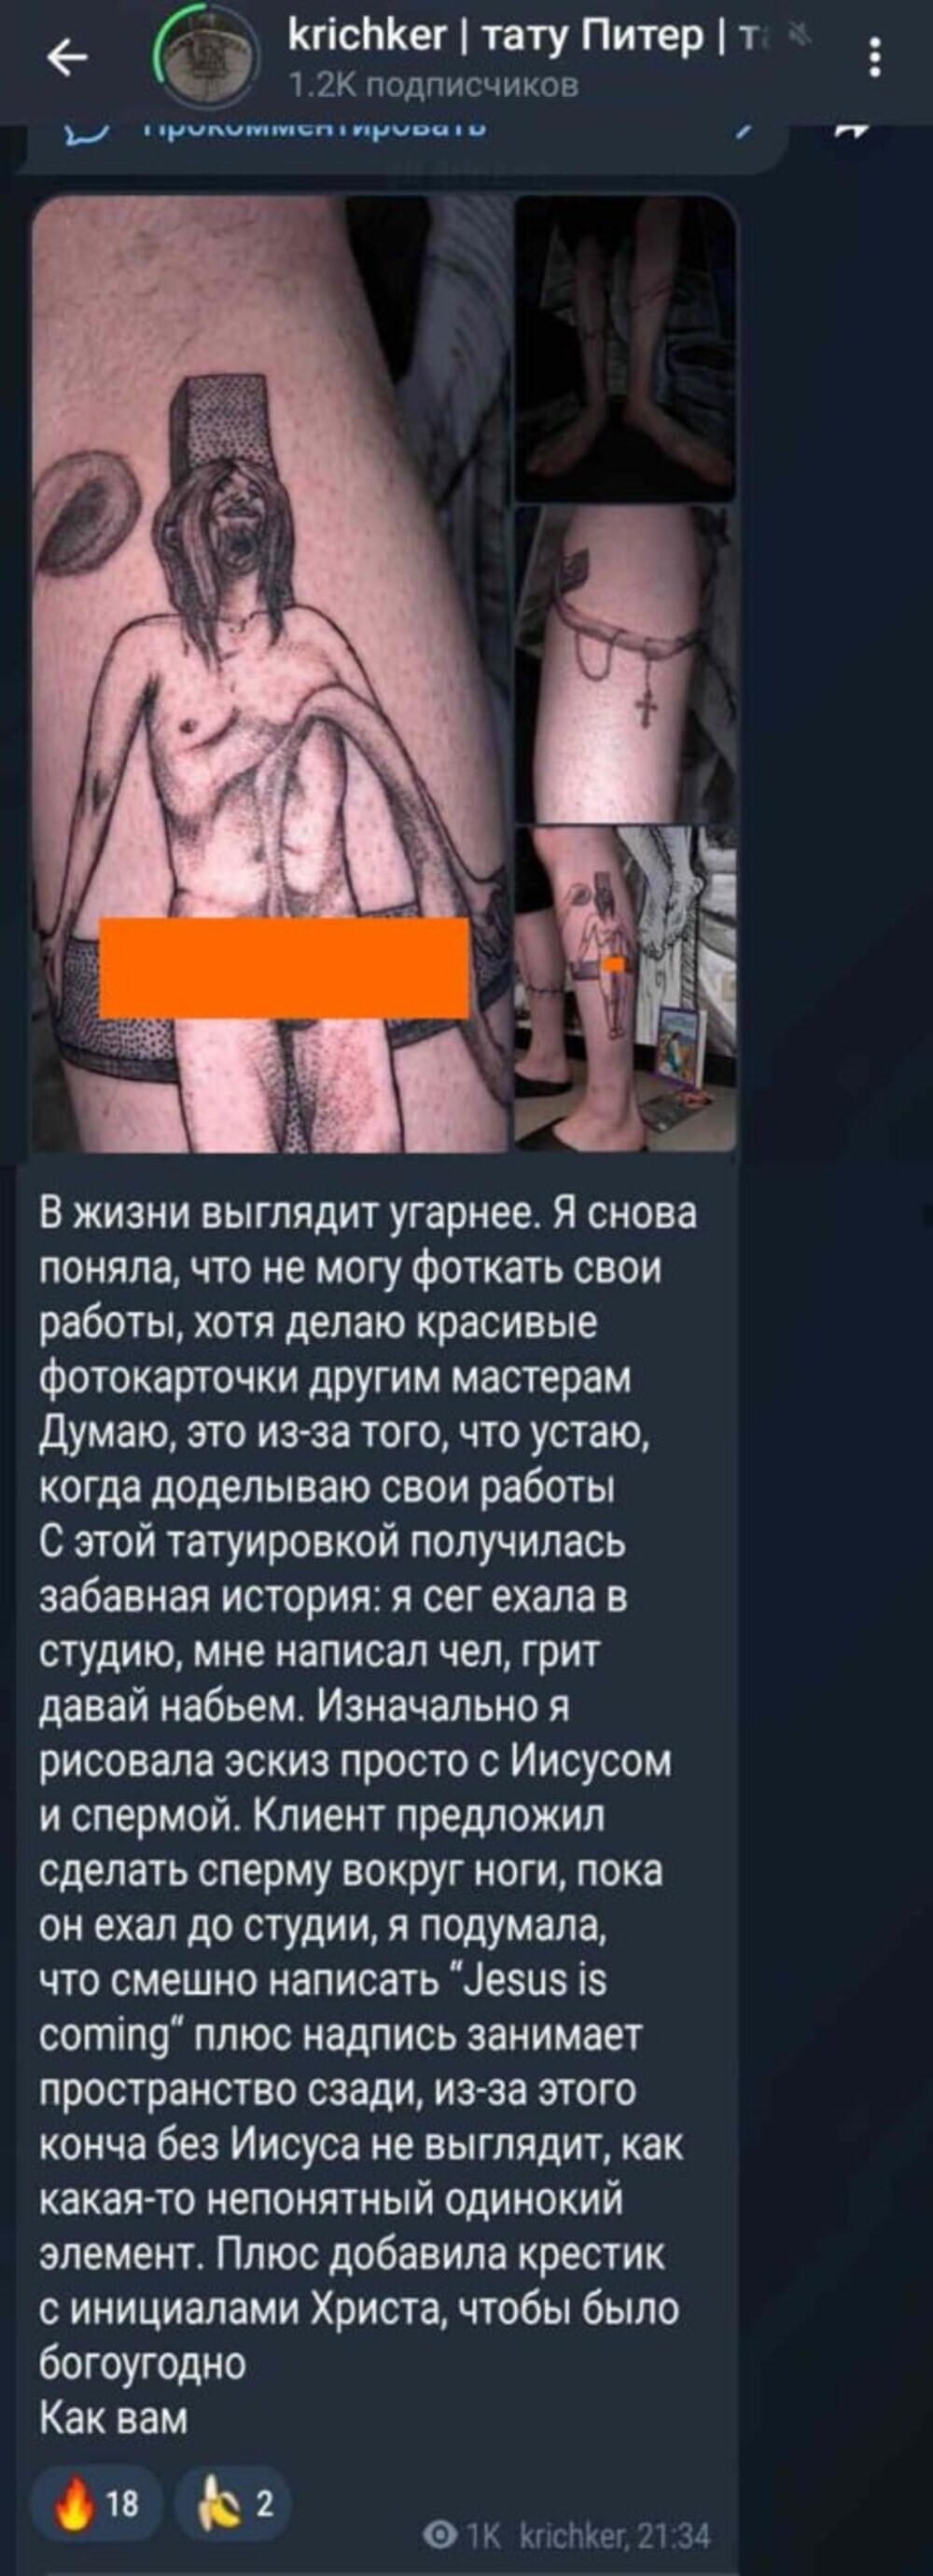 Тату-мастера из Санкт-Петербурга задержали после жалобы православных активистов